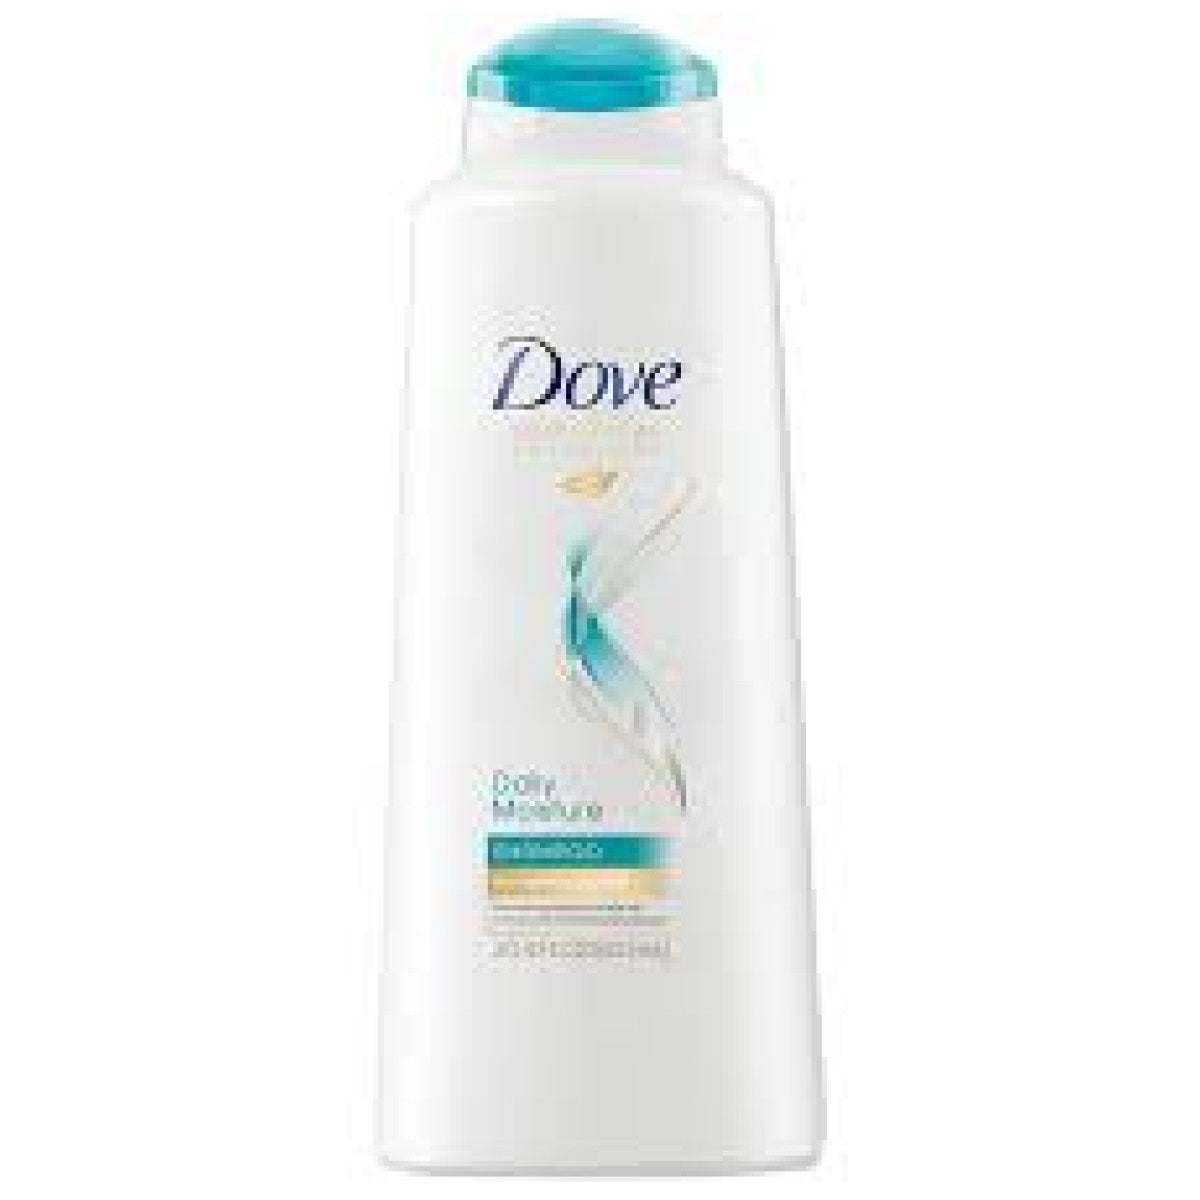 Dove Daily Moisture Shampoo, 355ml